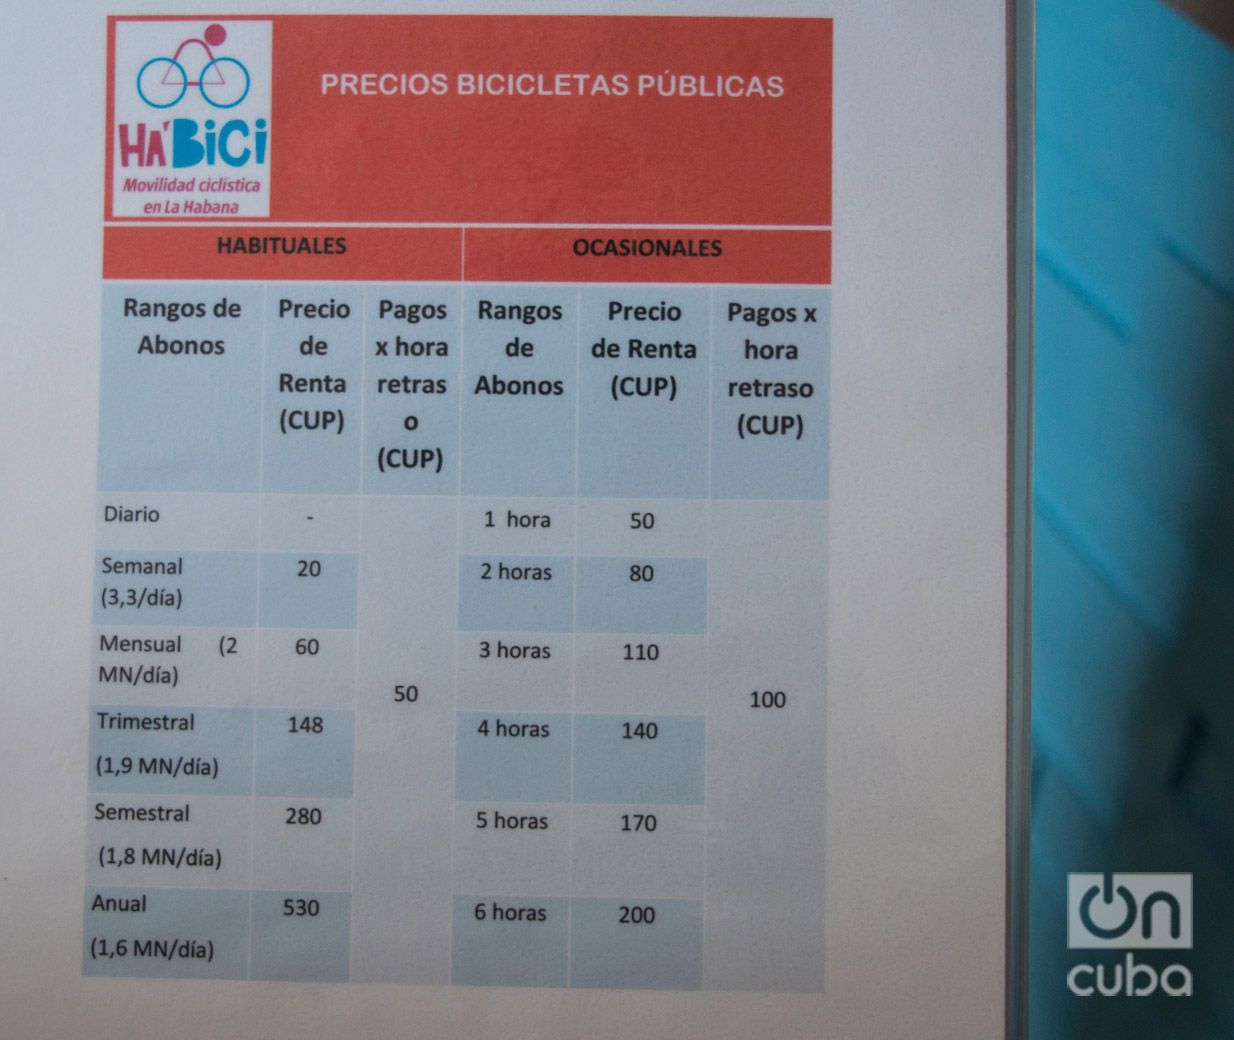 Tarifas de precios del sistema de bicicletas públicas Ha'Bici. Foto: Otmaro Rodríguez.